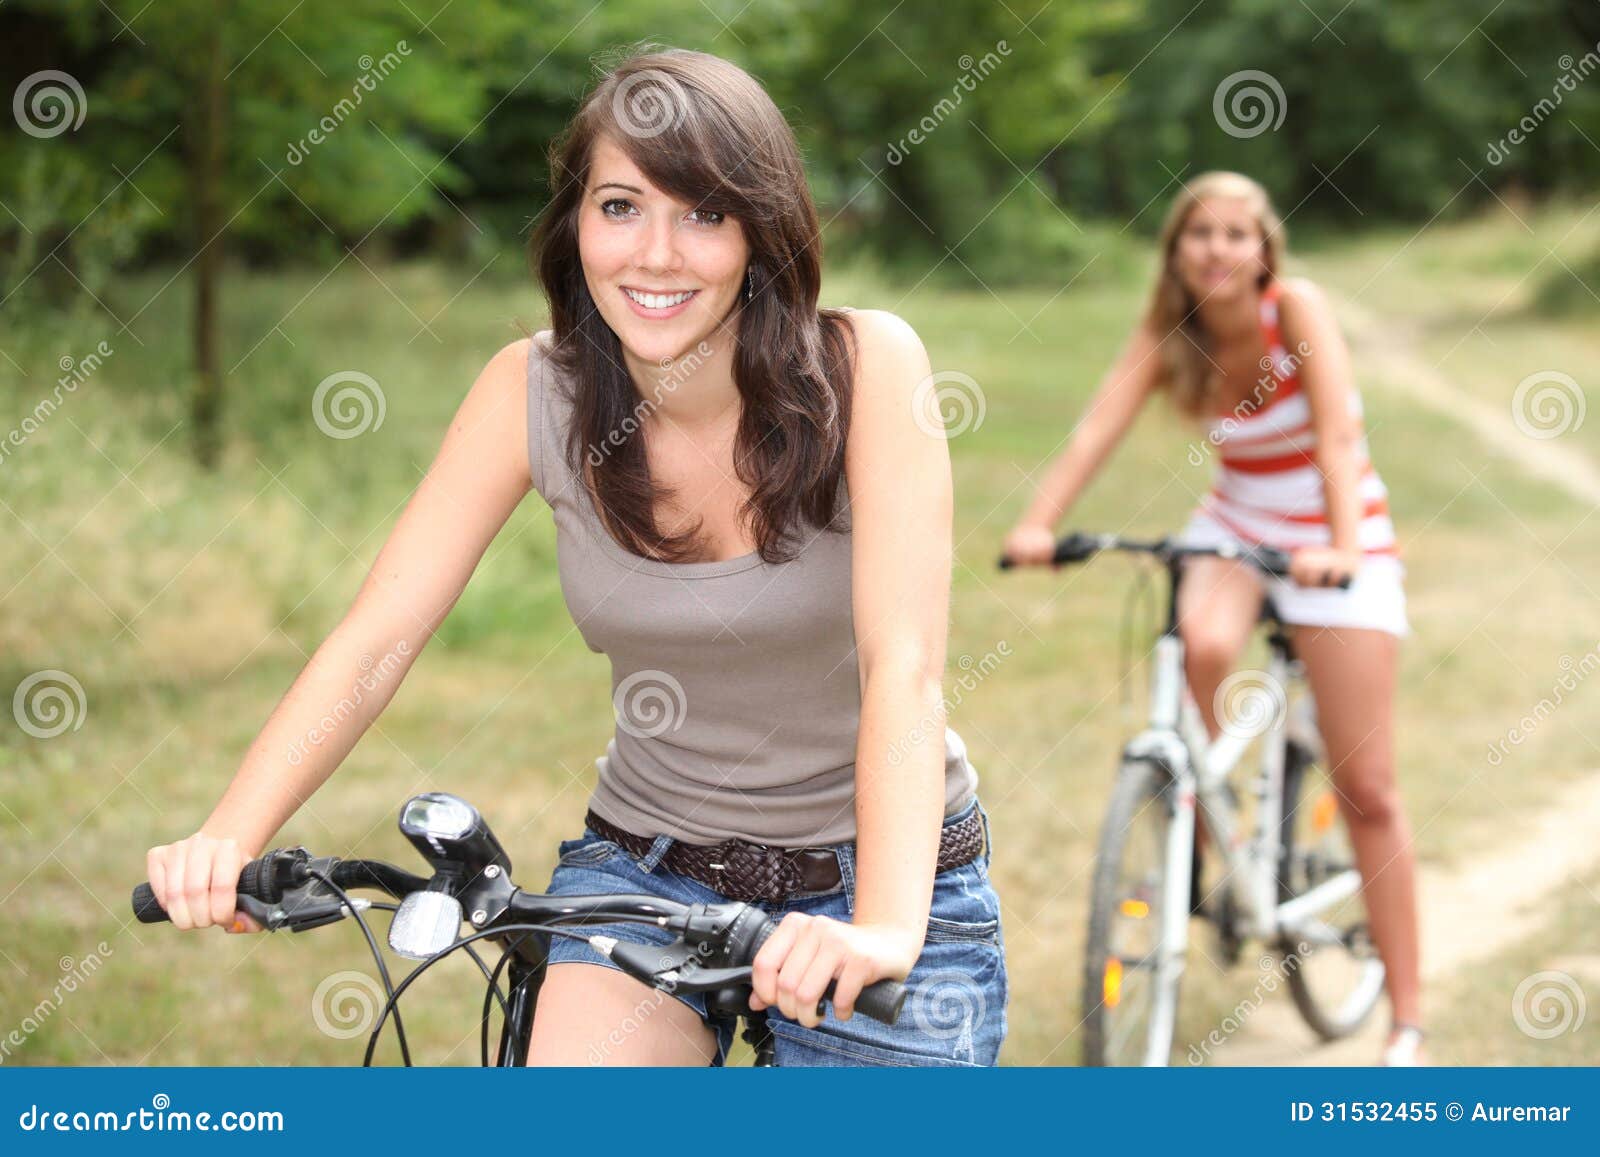 rotatie Ass Polair Twee meisjes op fietsen stock afbeelding. Image of zonnig - 31532455